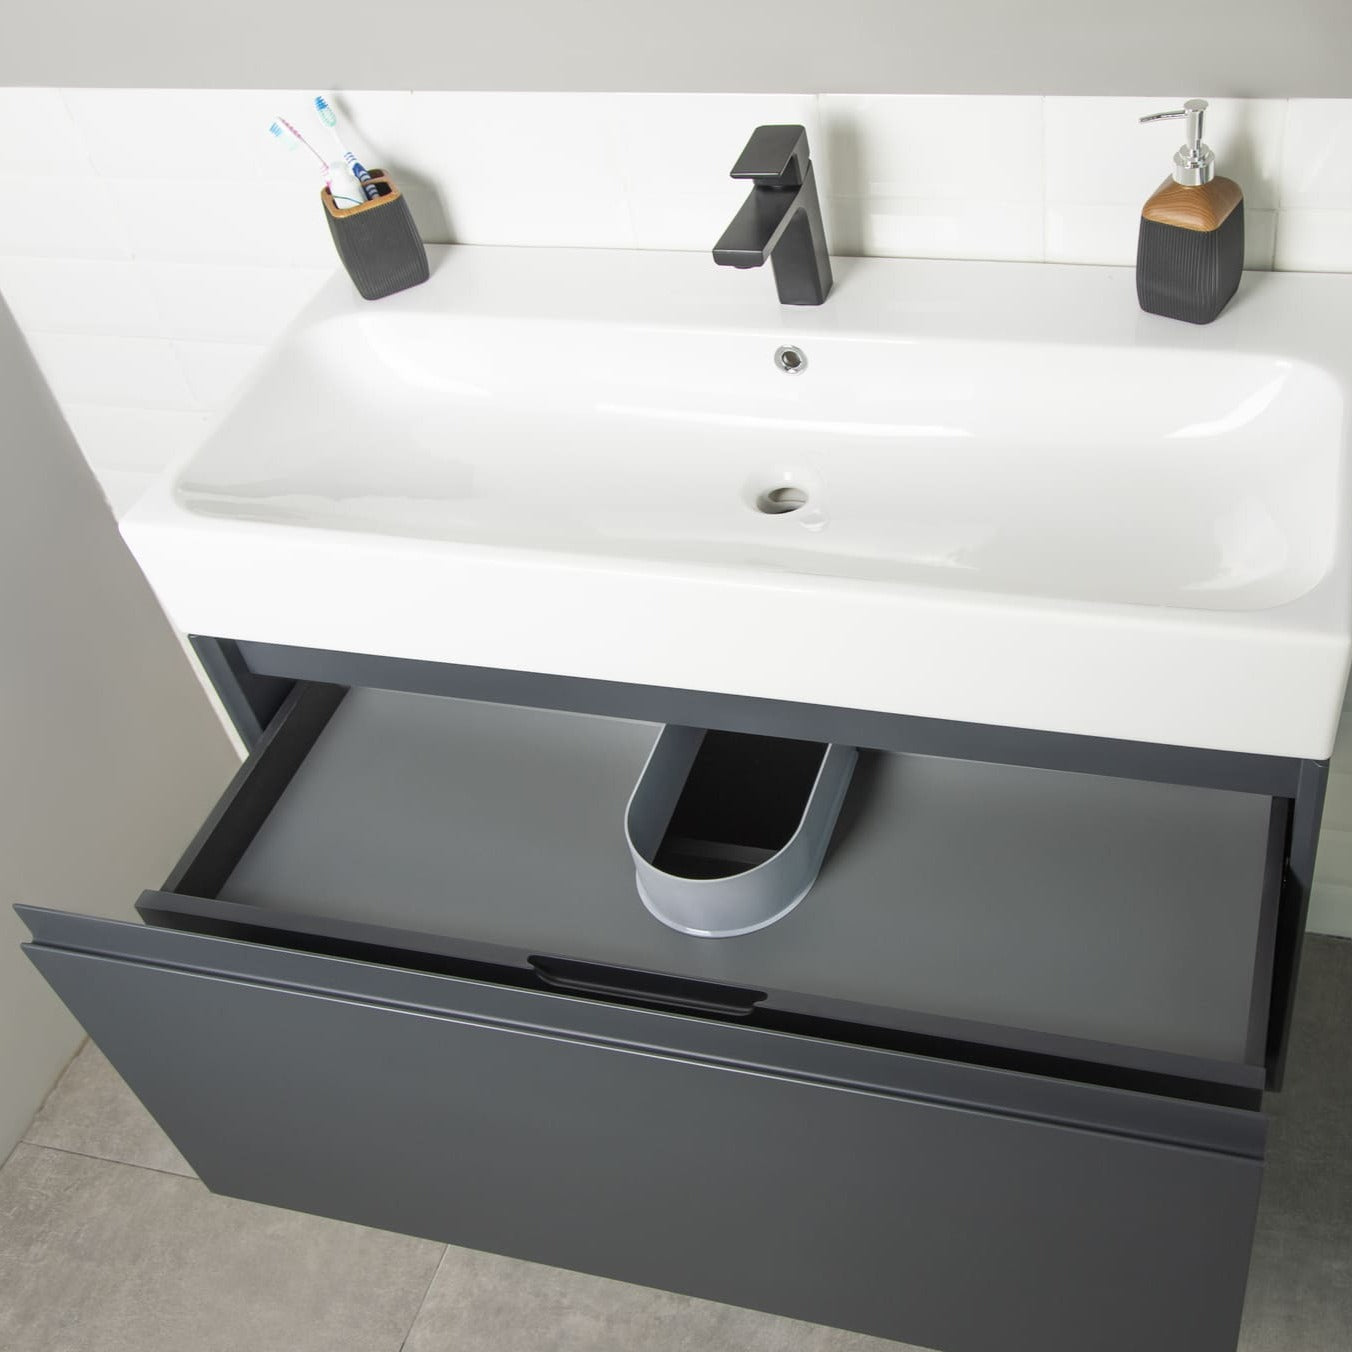 Gala Bathroom Vanity Homelero 39" #size_39" #color_dark grey